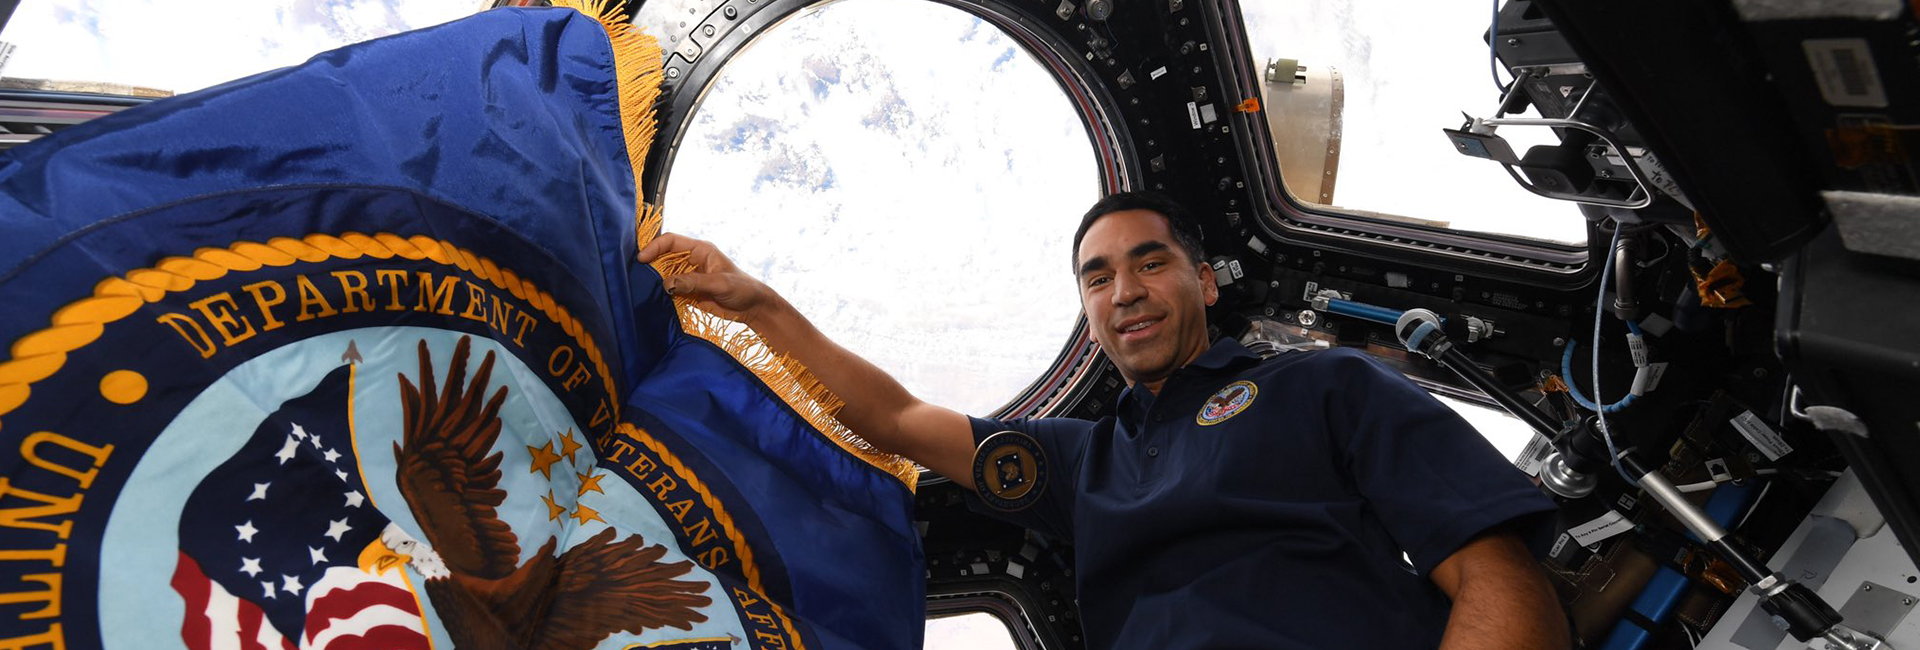 Американский астронавт НАСА индийского происхождения Раджа Чари поделился фотографией, на которой он год назад пристыковался к Международной космической станции. Астронавт готовится к лунной миссии НАСА «Артемида».